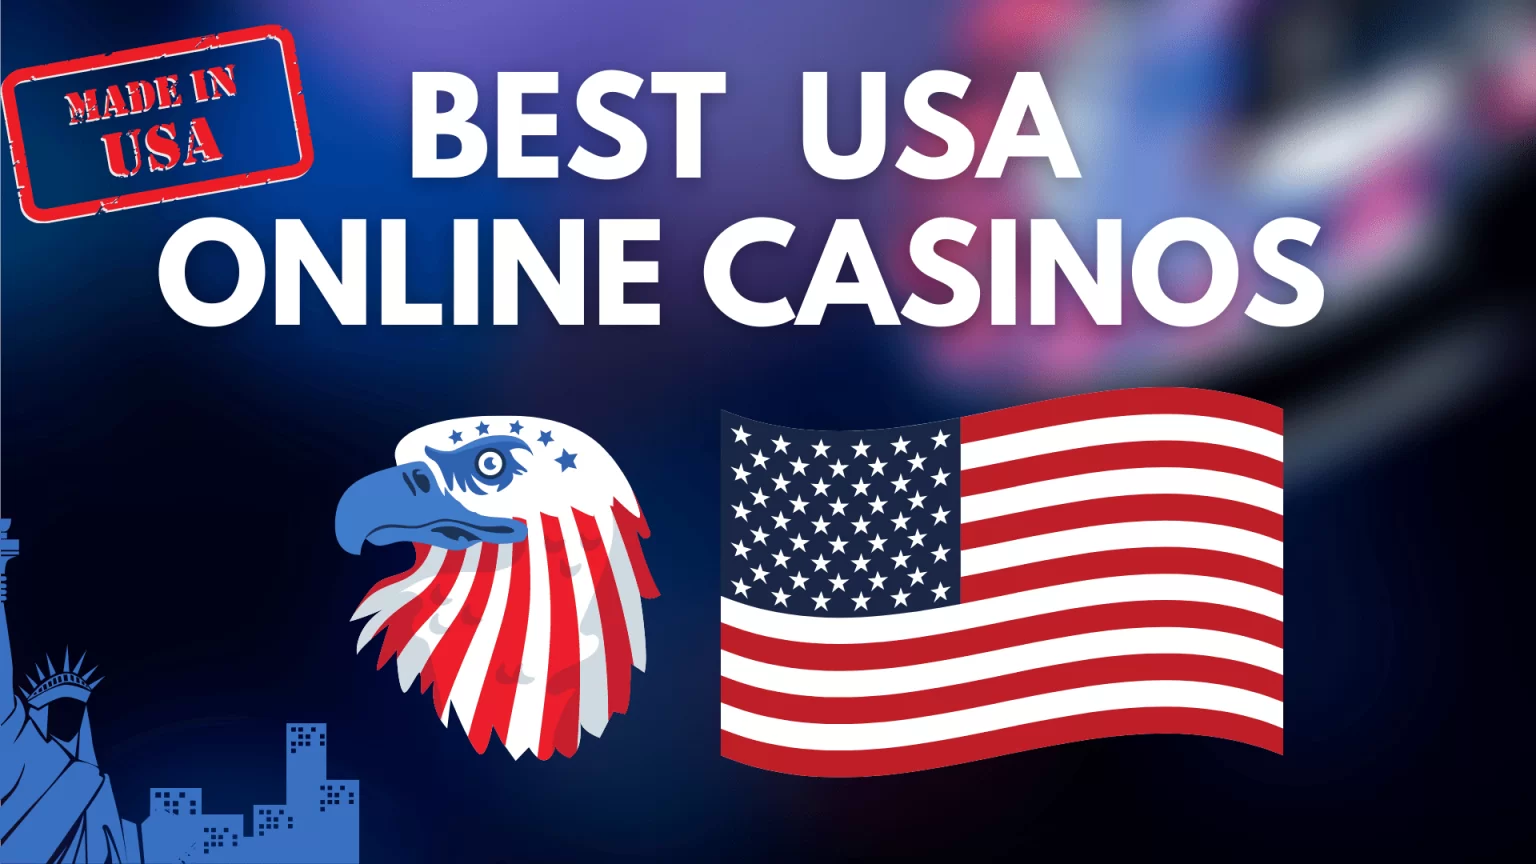 Top Ten Casino Online